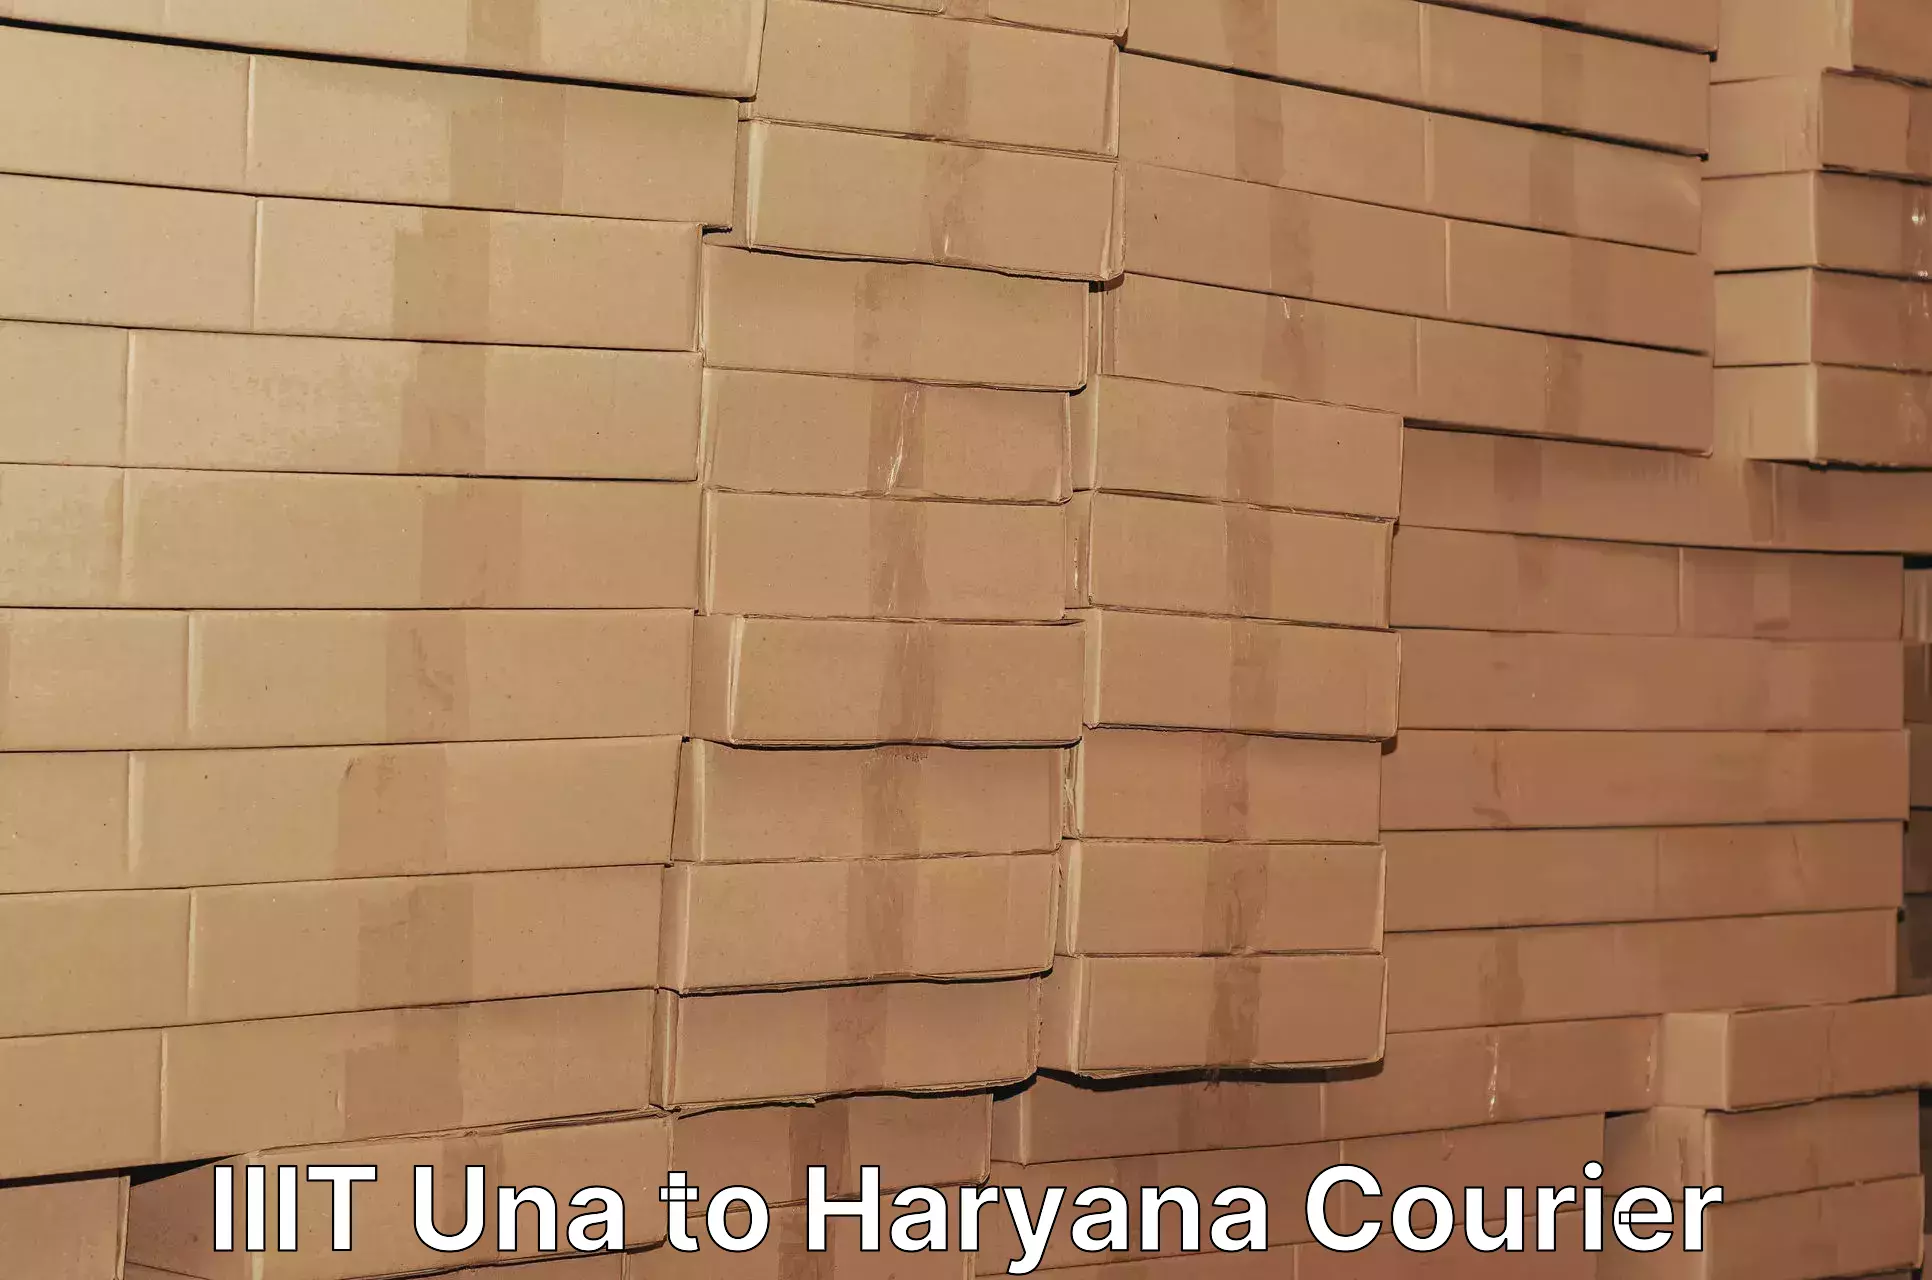 Cost-effective courier options IIIT Una to Haryana